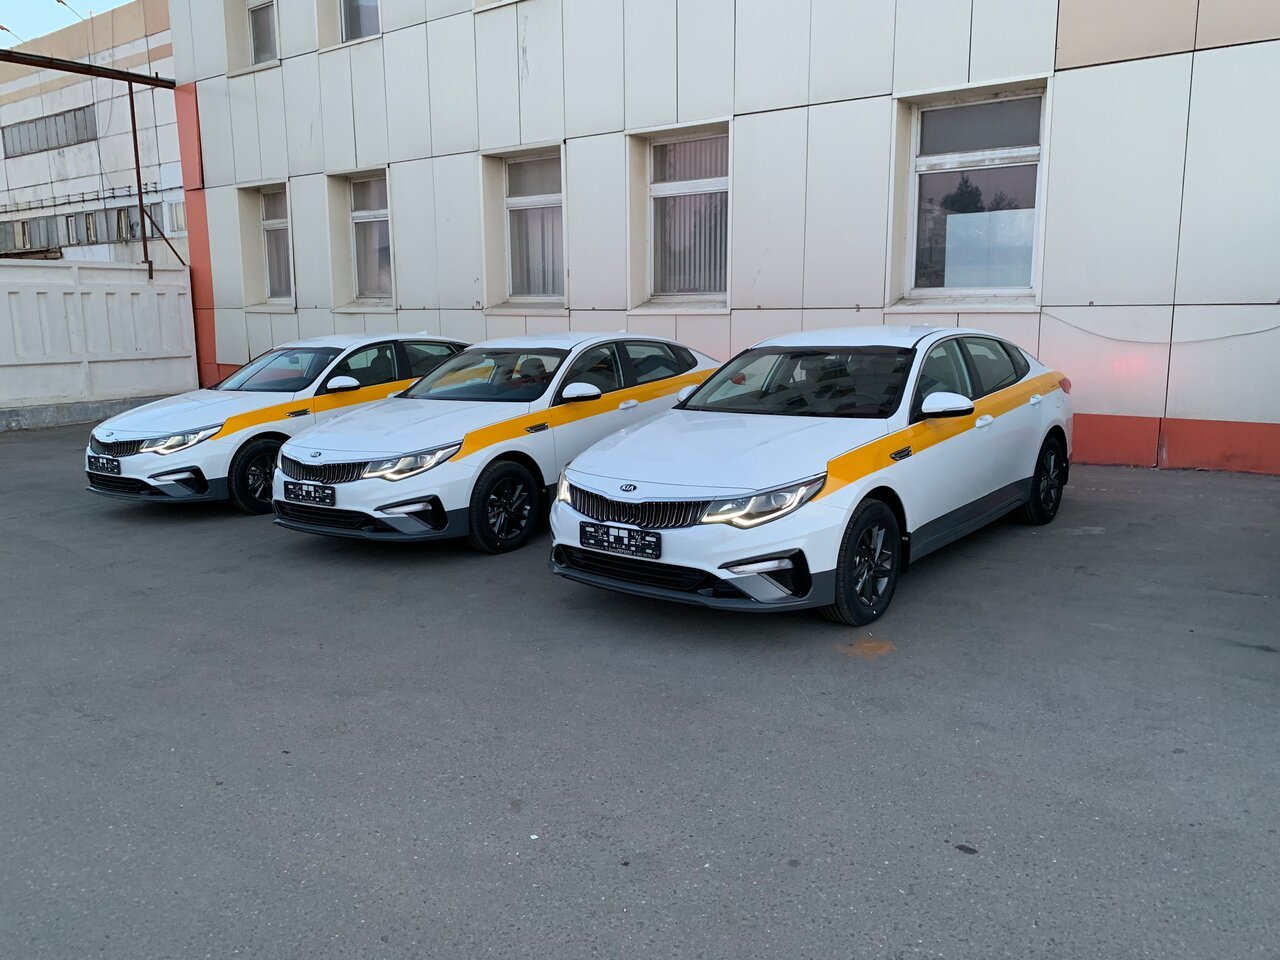 Автомобили подходящие под такси. Kia Optima такси. Такси комфорт Киа Оптима. Kia Optima 2019 такси.